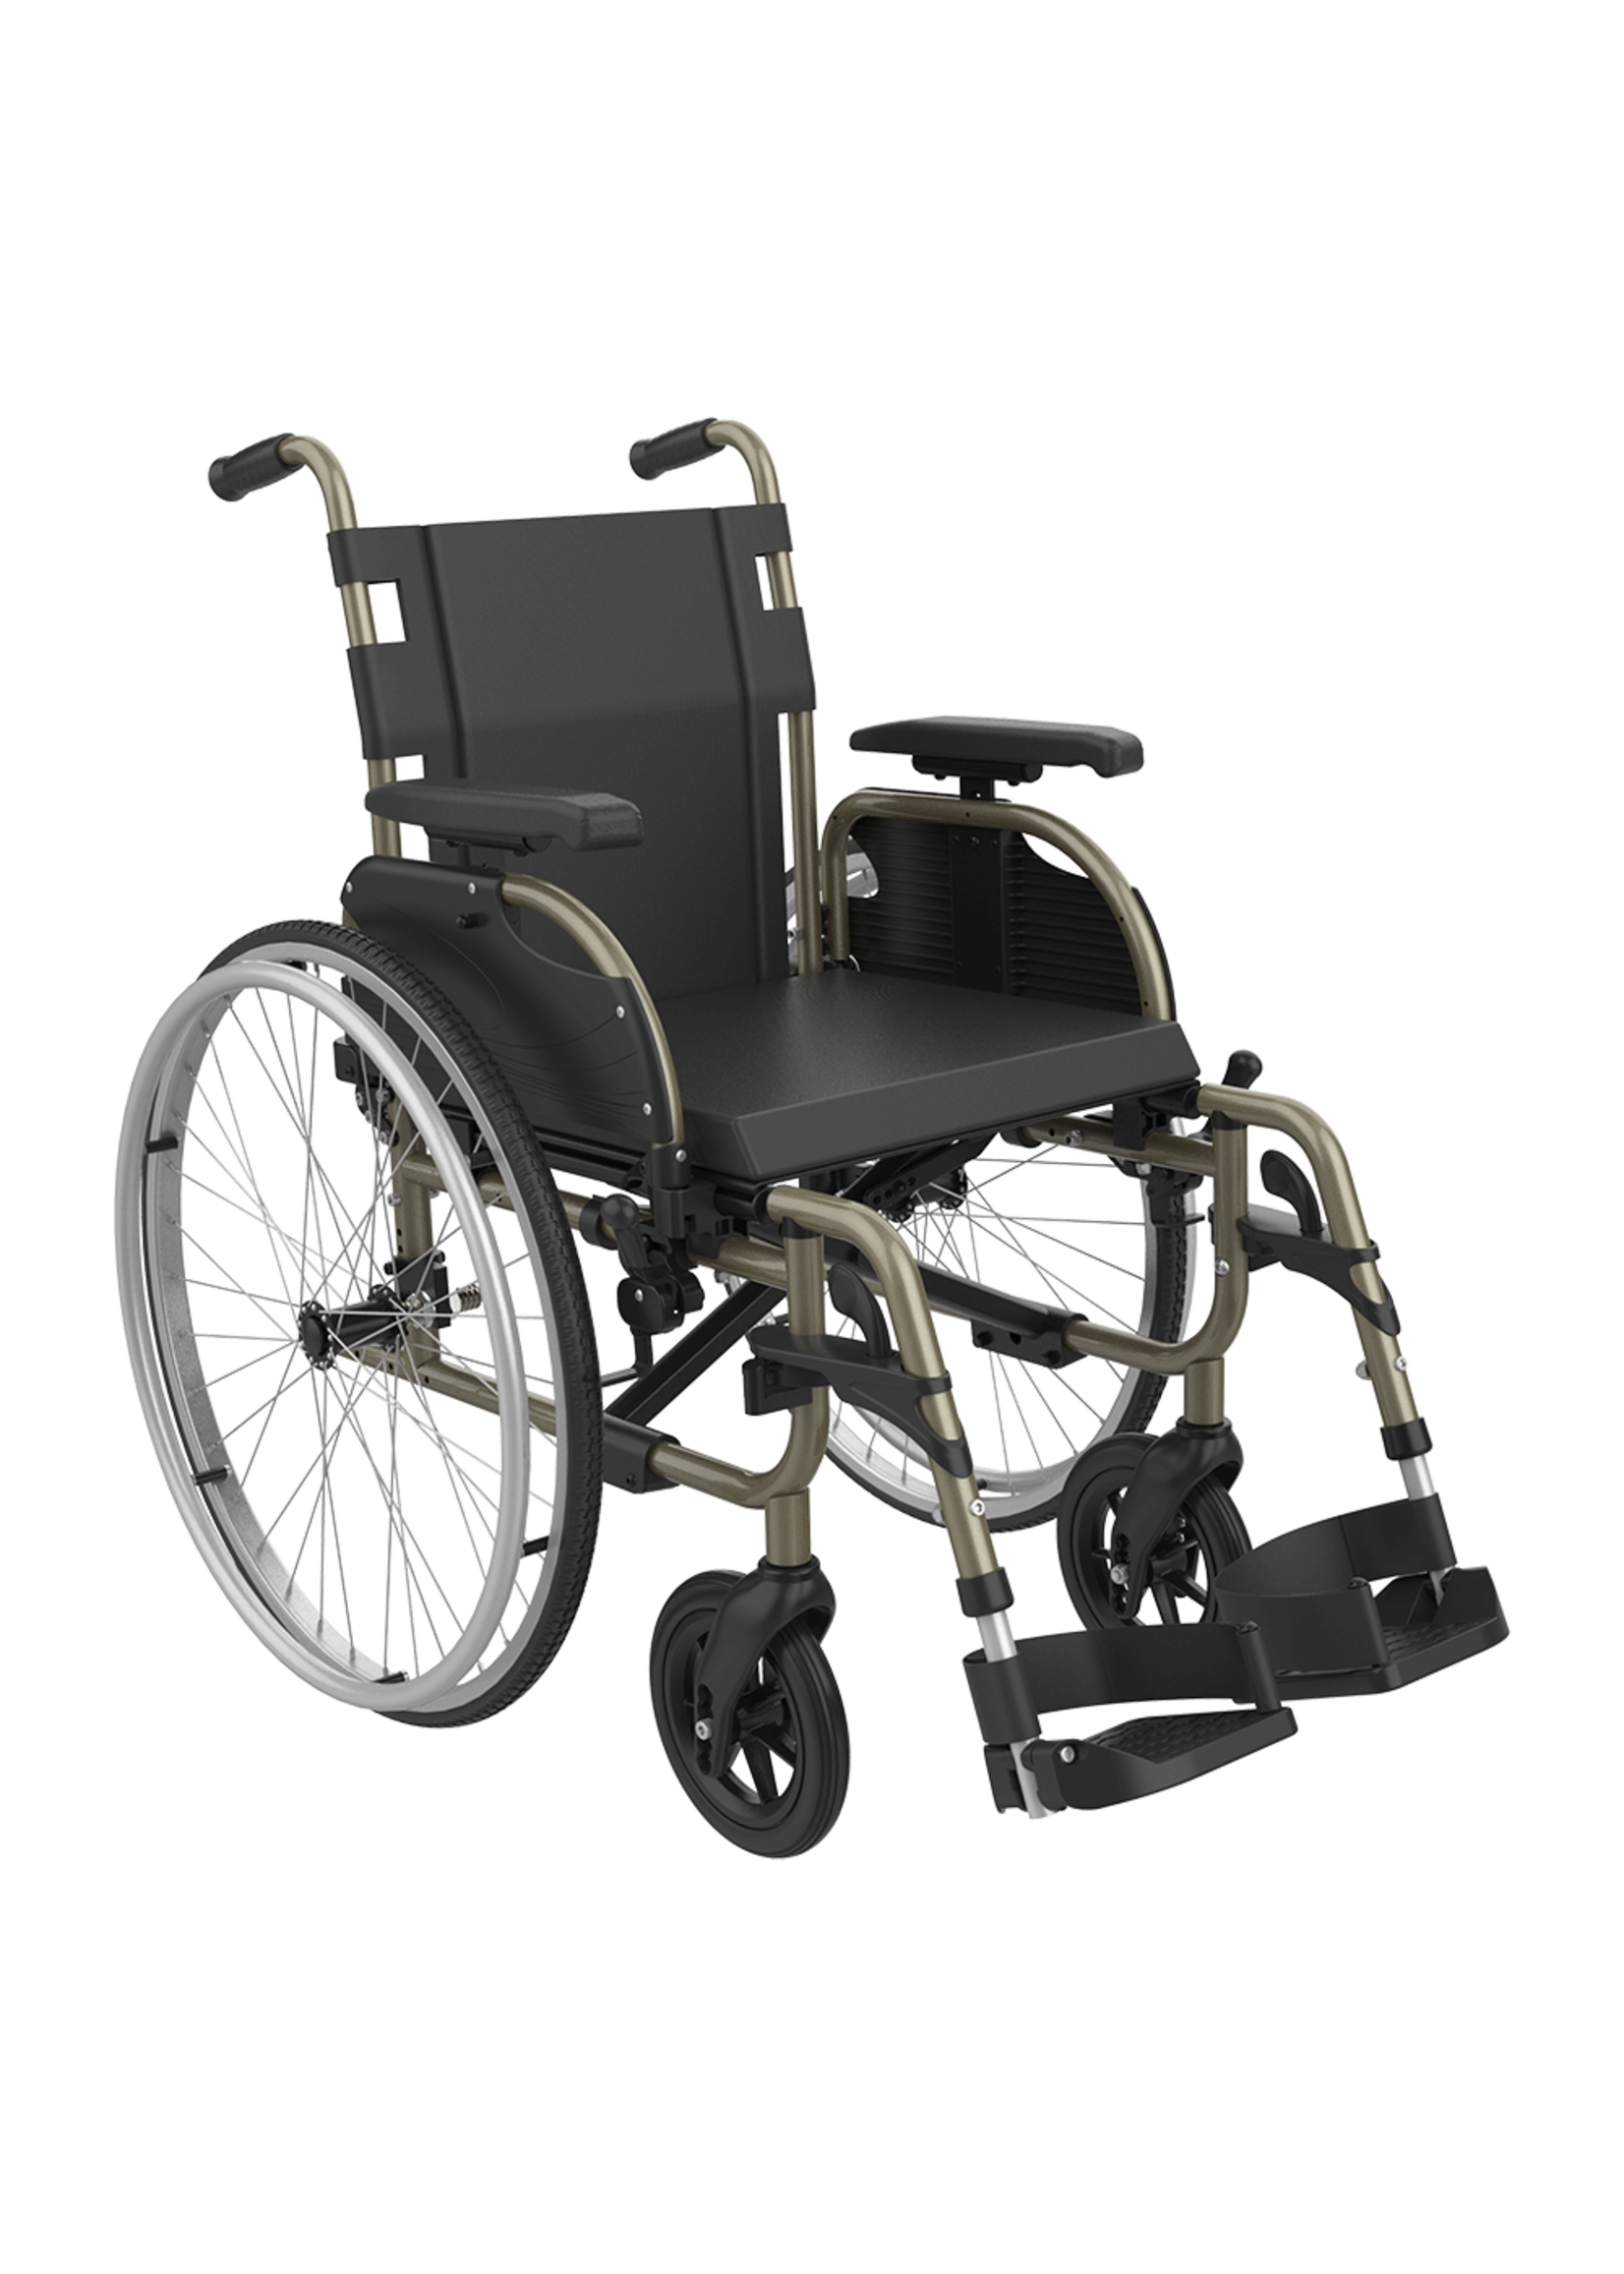 Aannemelijk Aannames, aannames. Raad eens Bachelor opleiding Rehasense Icon 20 Lichtgewicht rolstoel in 2 breedte maten - Expert Zorg